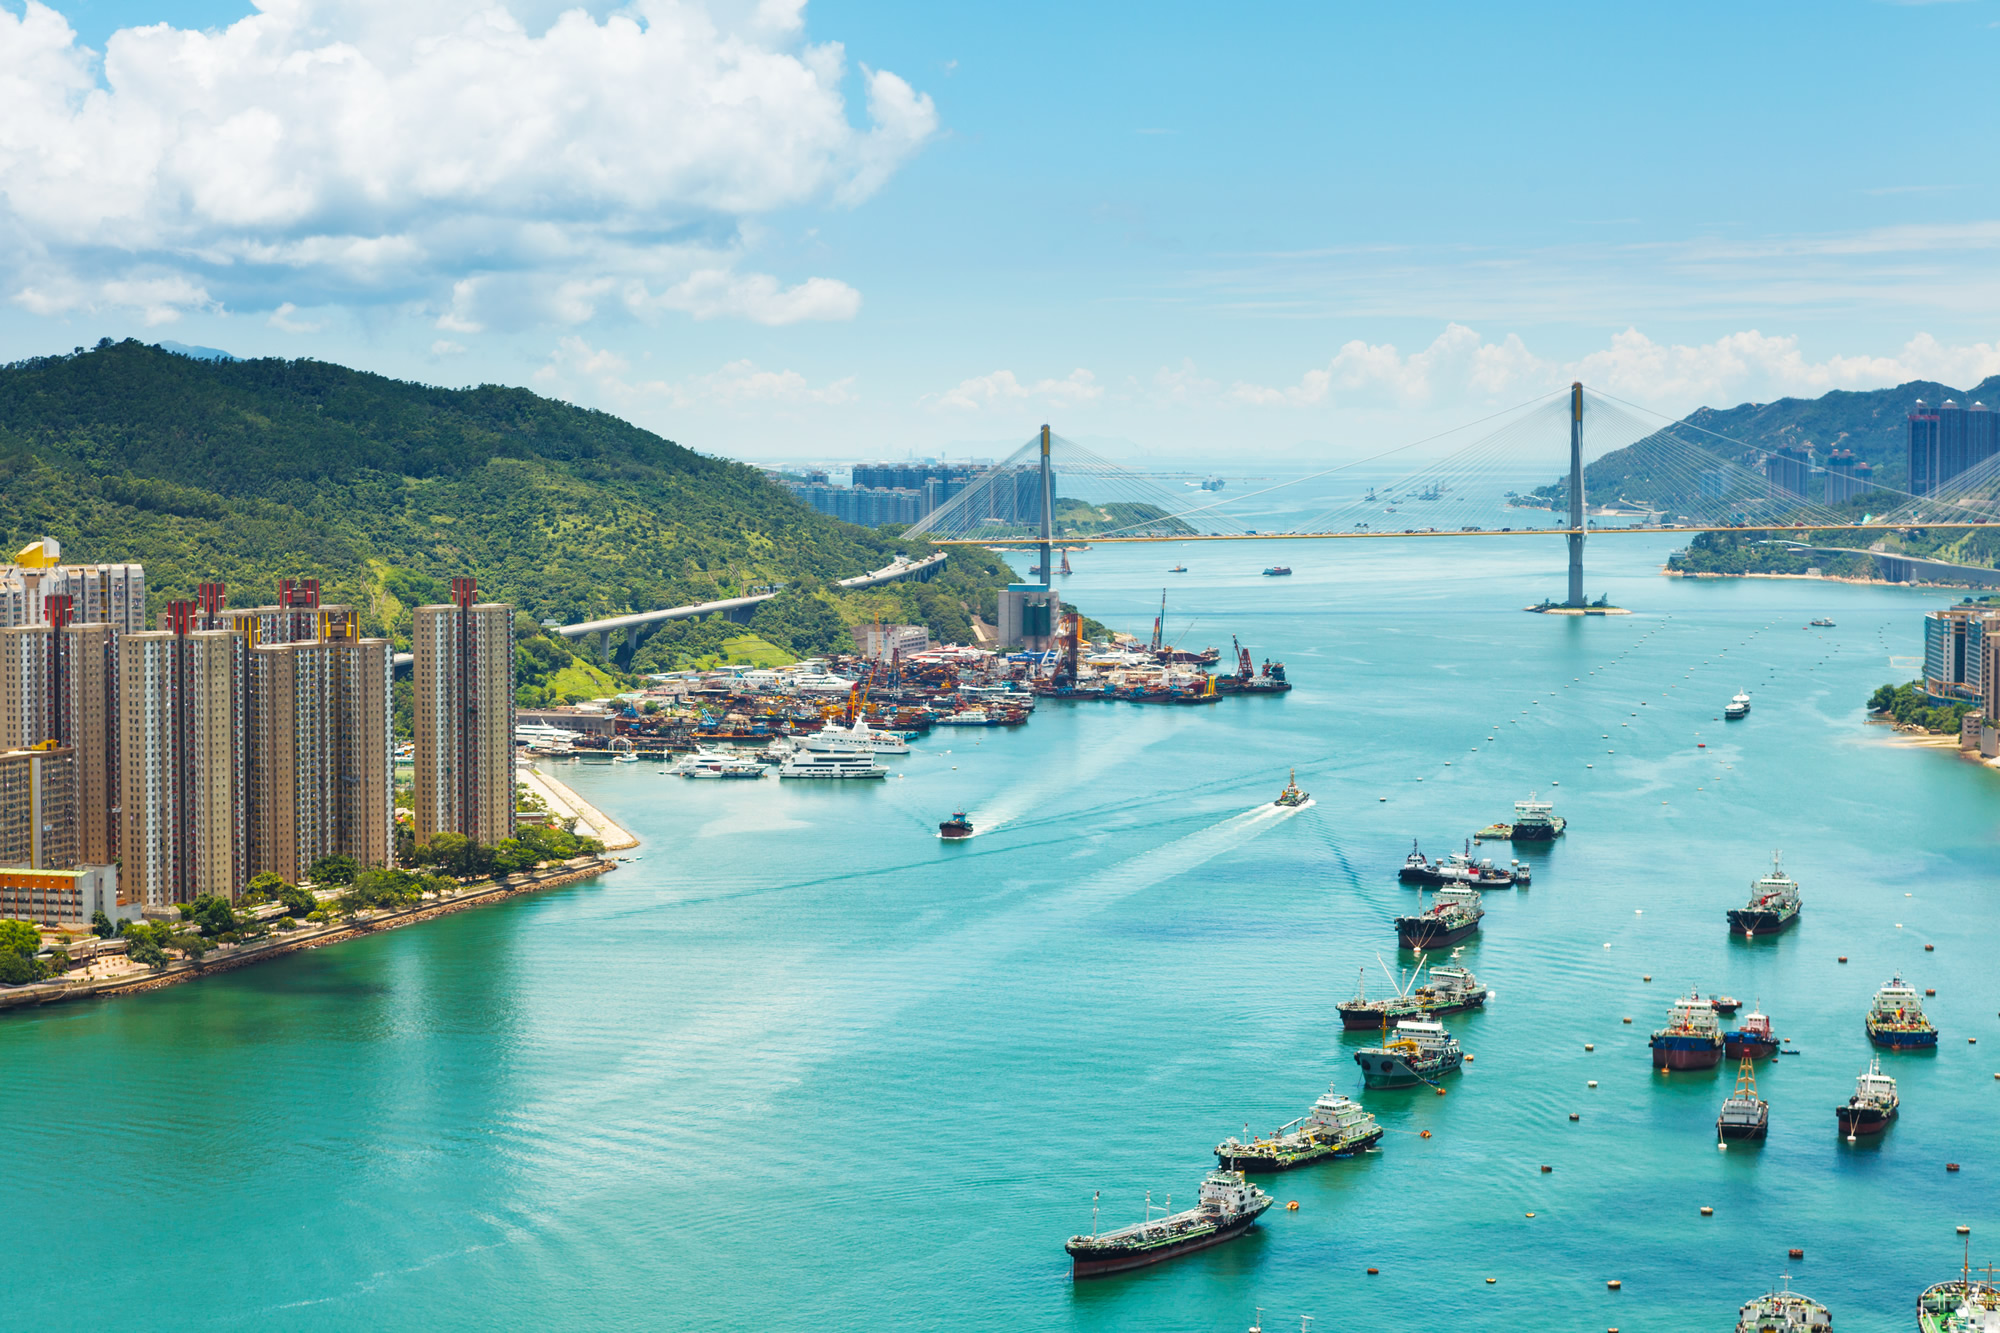 View of Hong Kong city